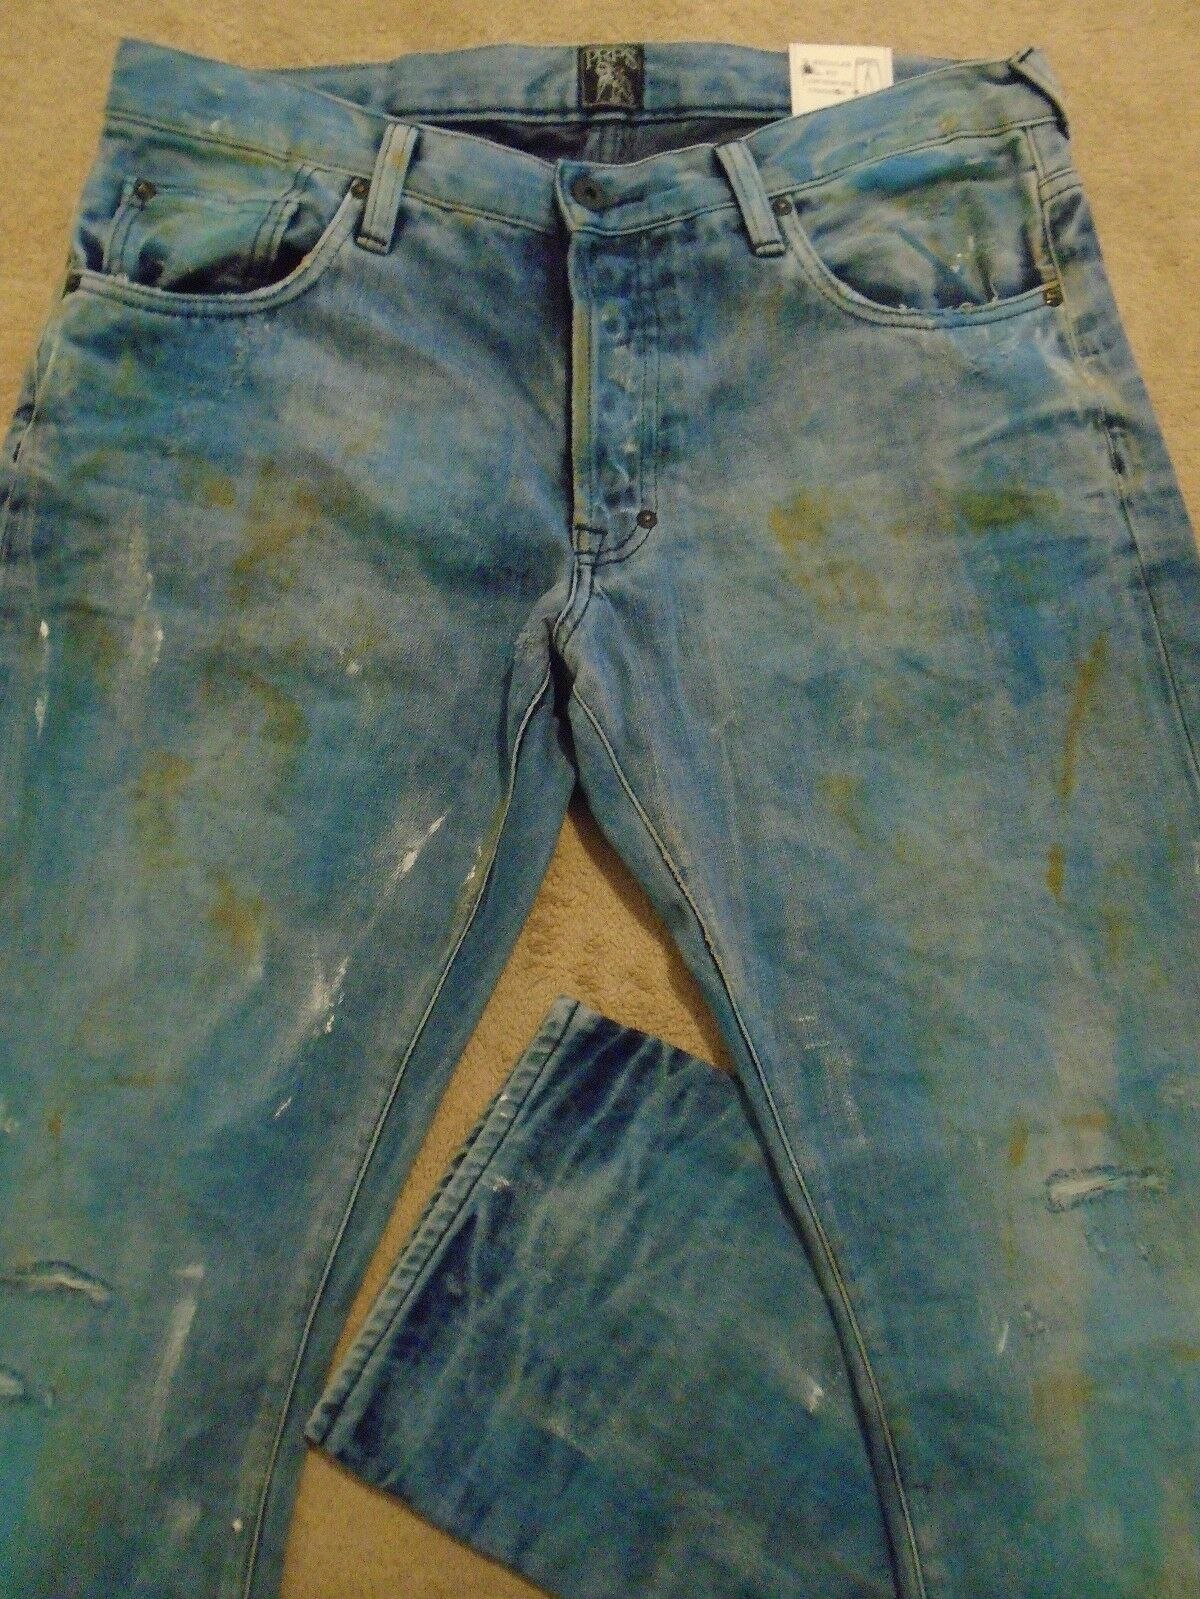 Джинсы грязного цвета. Barracuda джинсы. Грязные джинсы. Рваные грязные джинсы. Старые грязные джинсы.